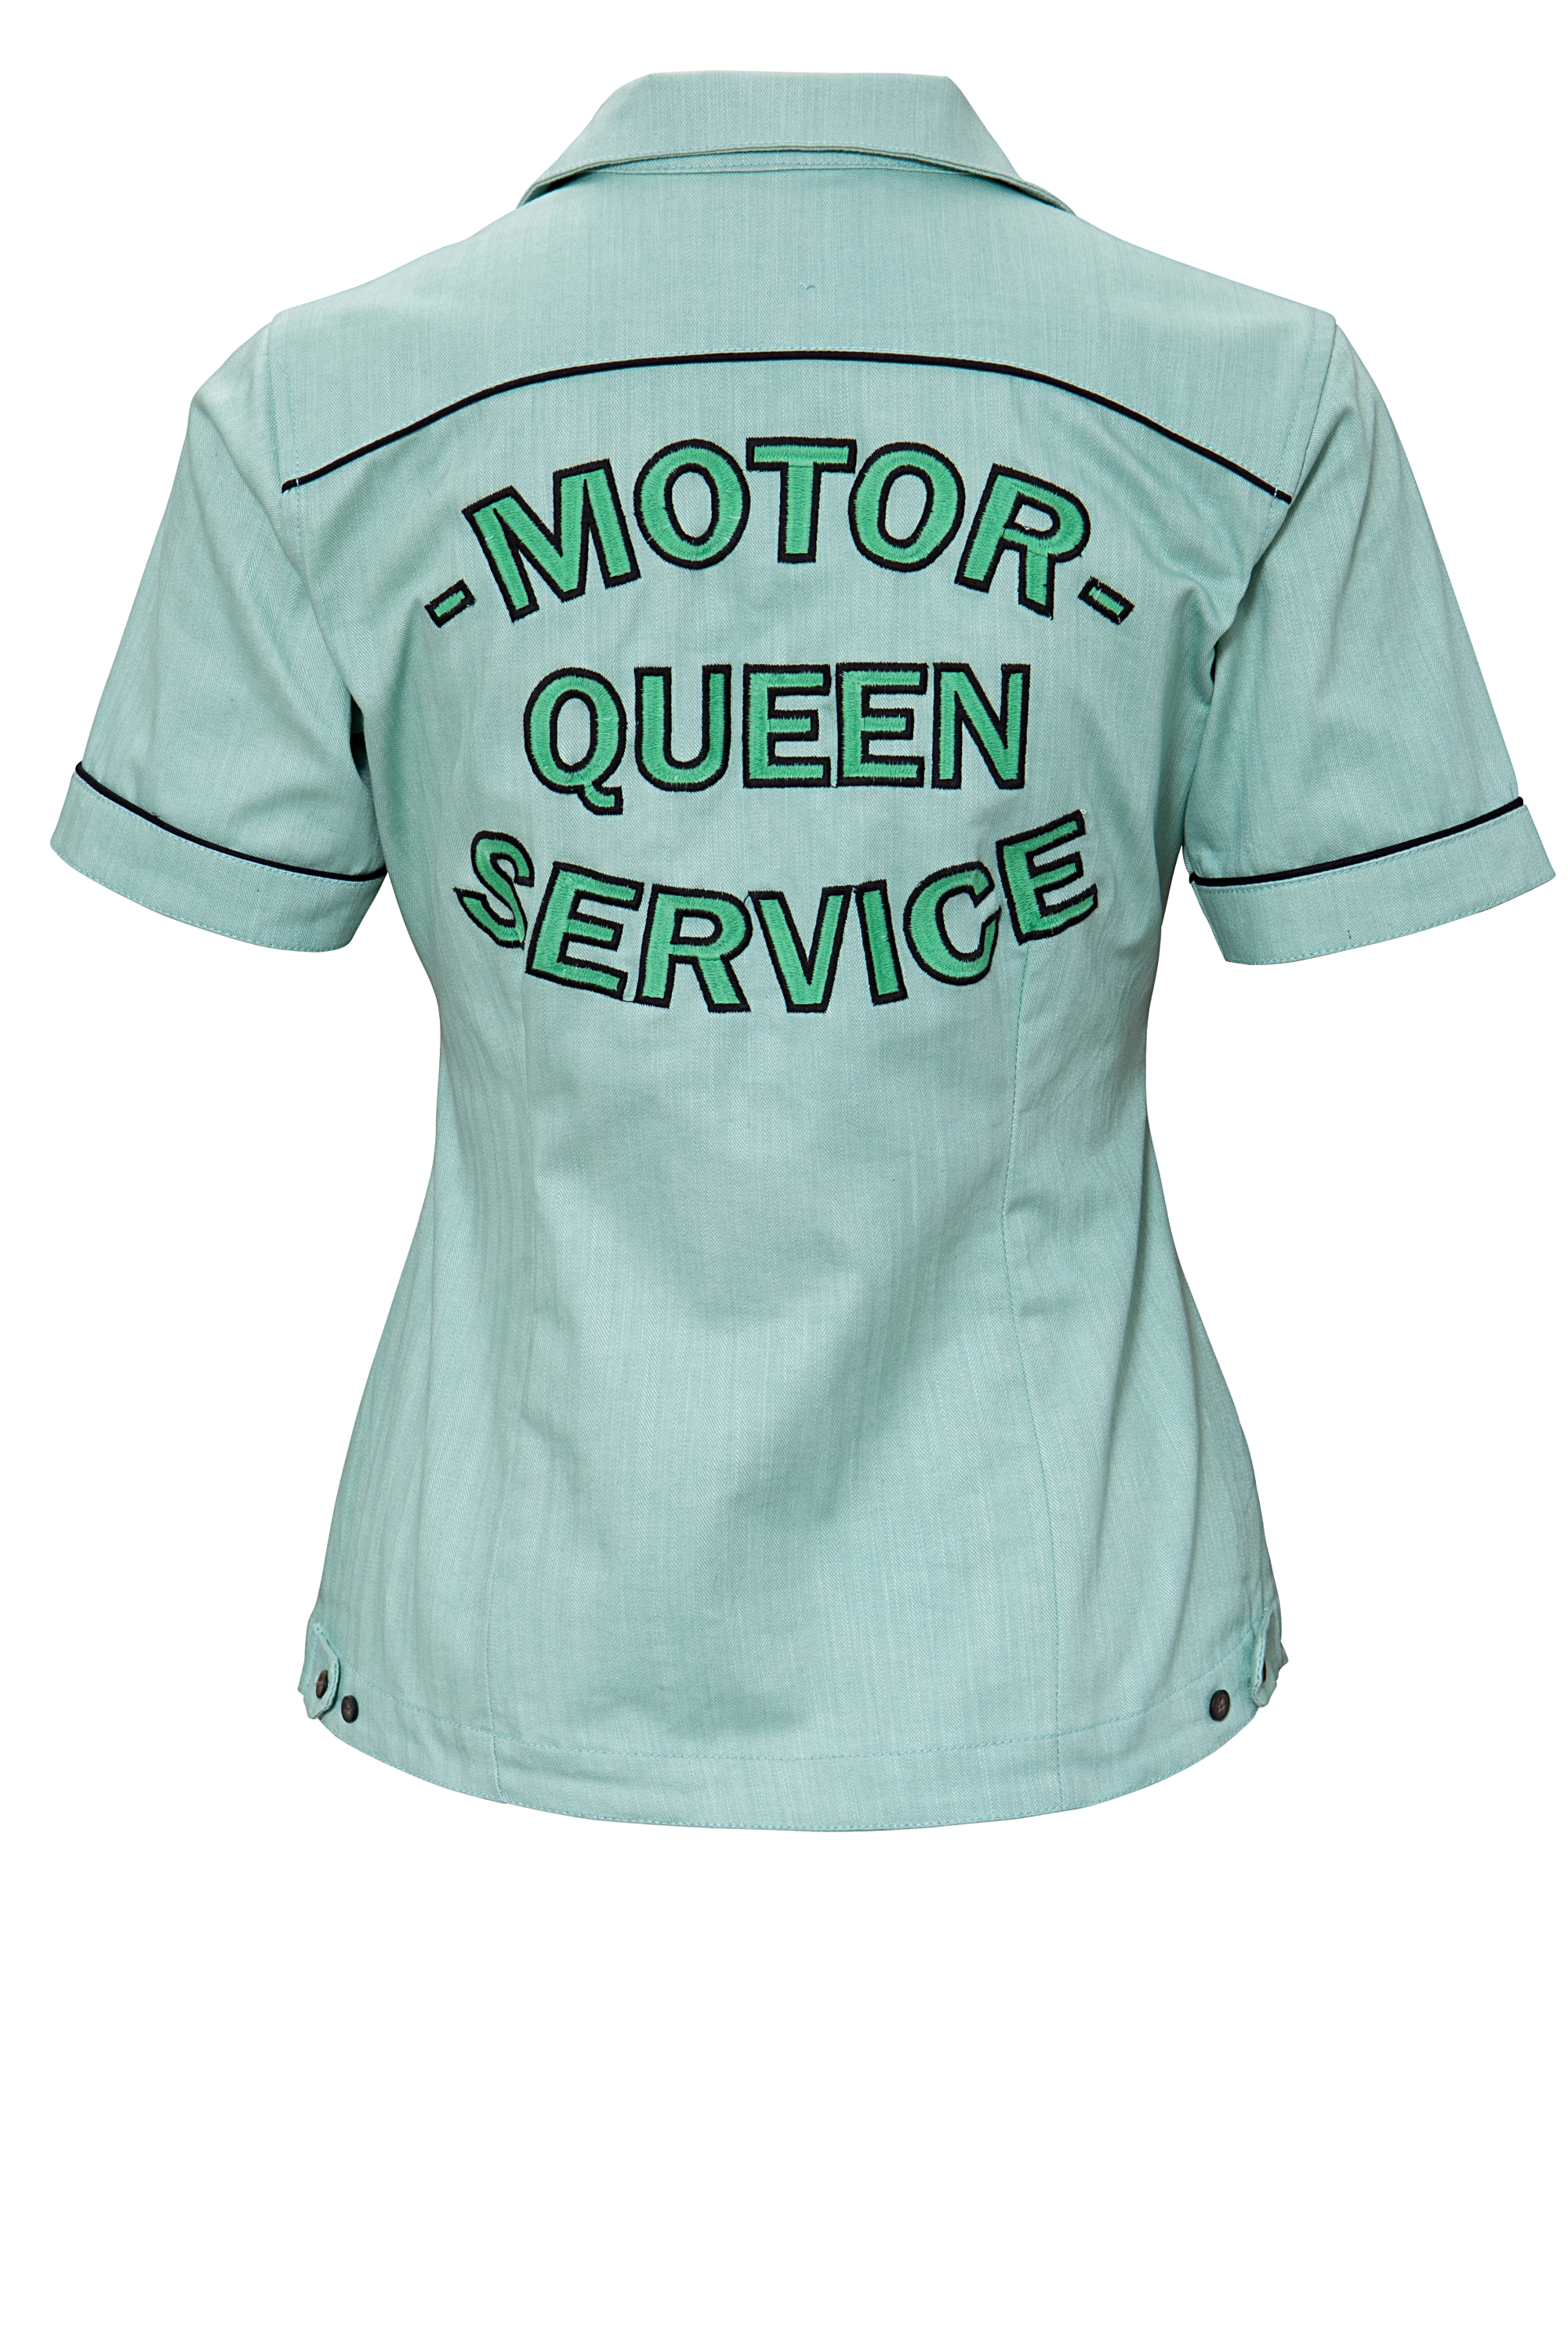 Queen Kerosin Bluse - Motor Queen S